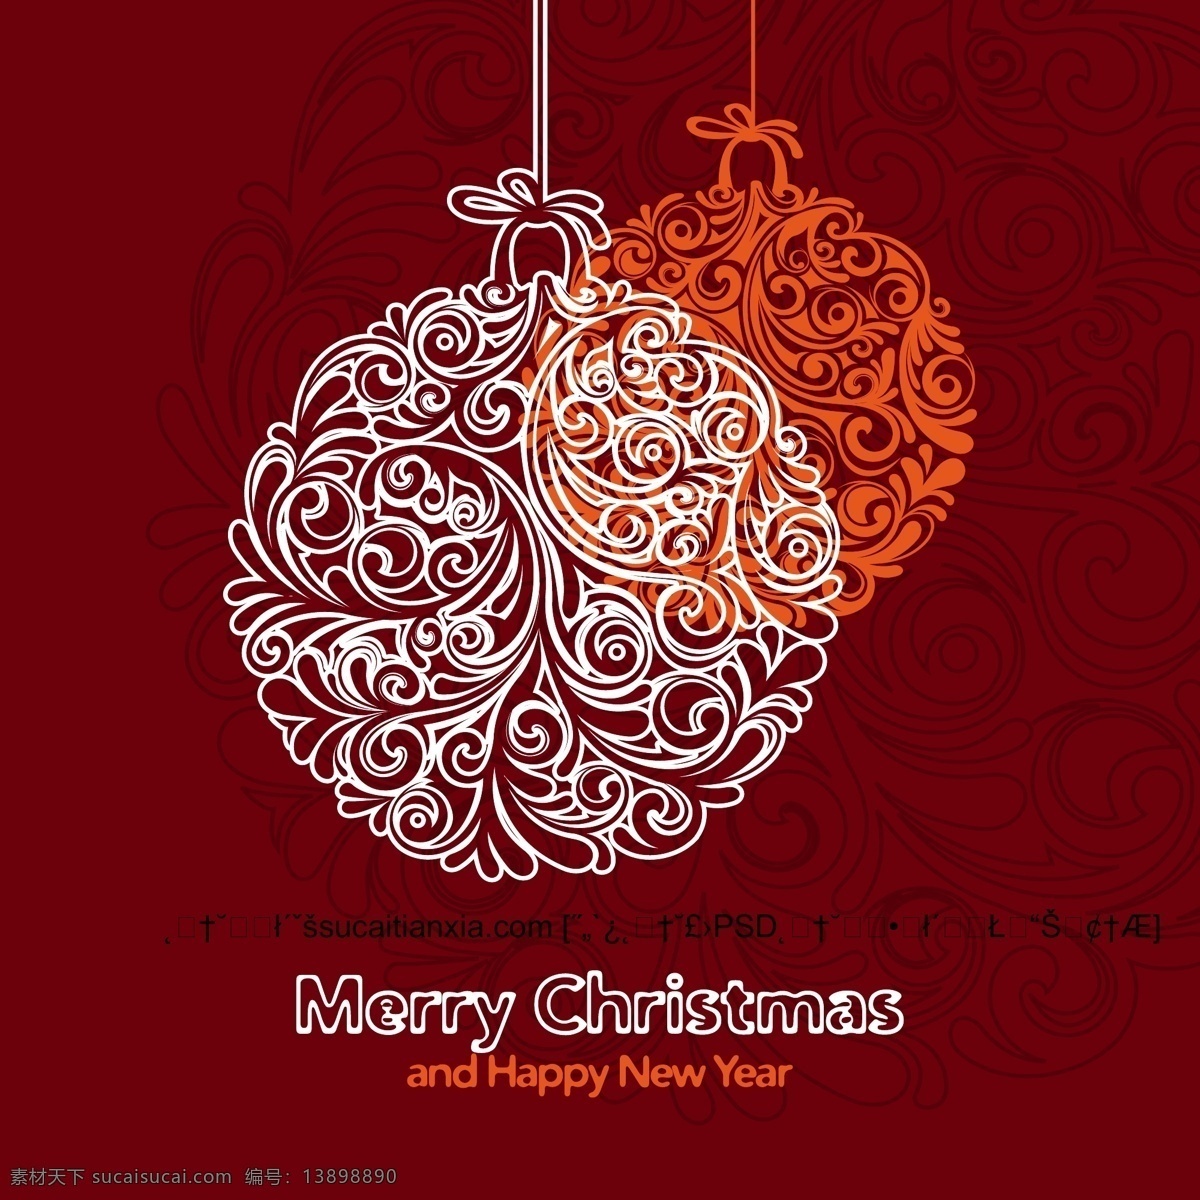 吊球 造型 纹样 圣诞节 贺卡 矢量 素 底纹 红色背景 圣诞节贺卡 线描花纹 吊球造型 节日素材 其他节日